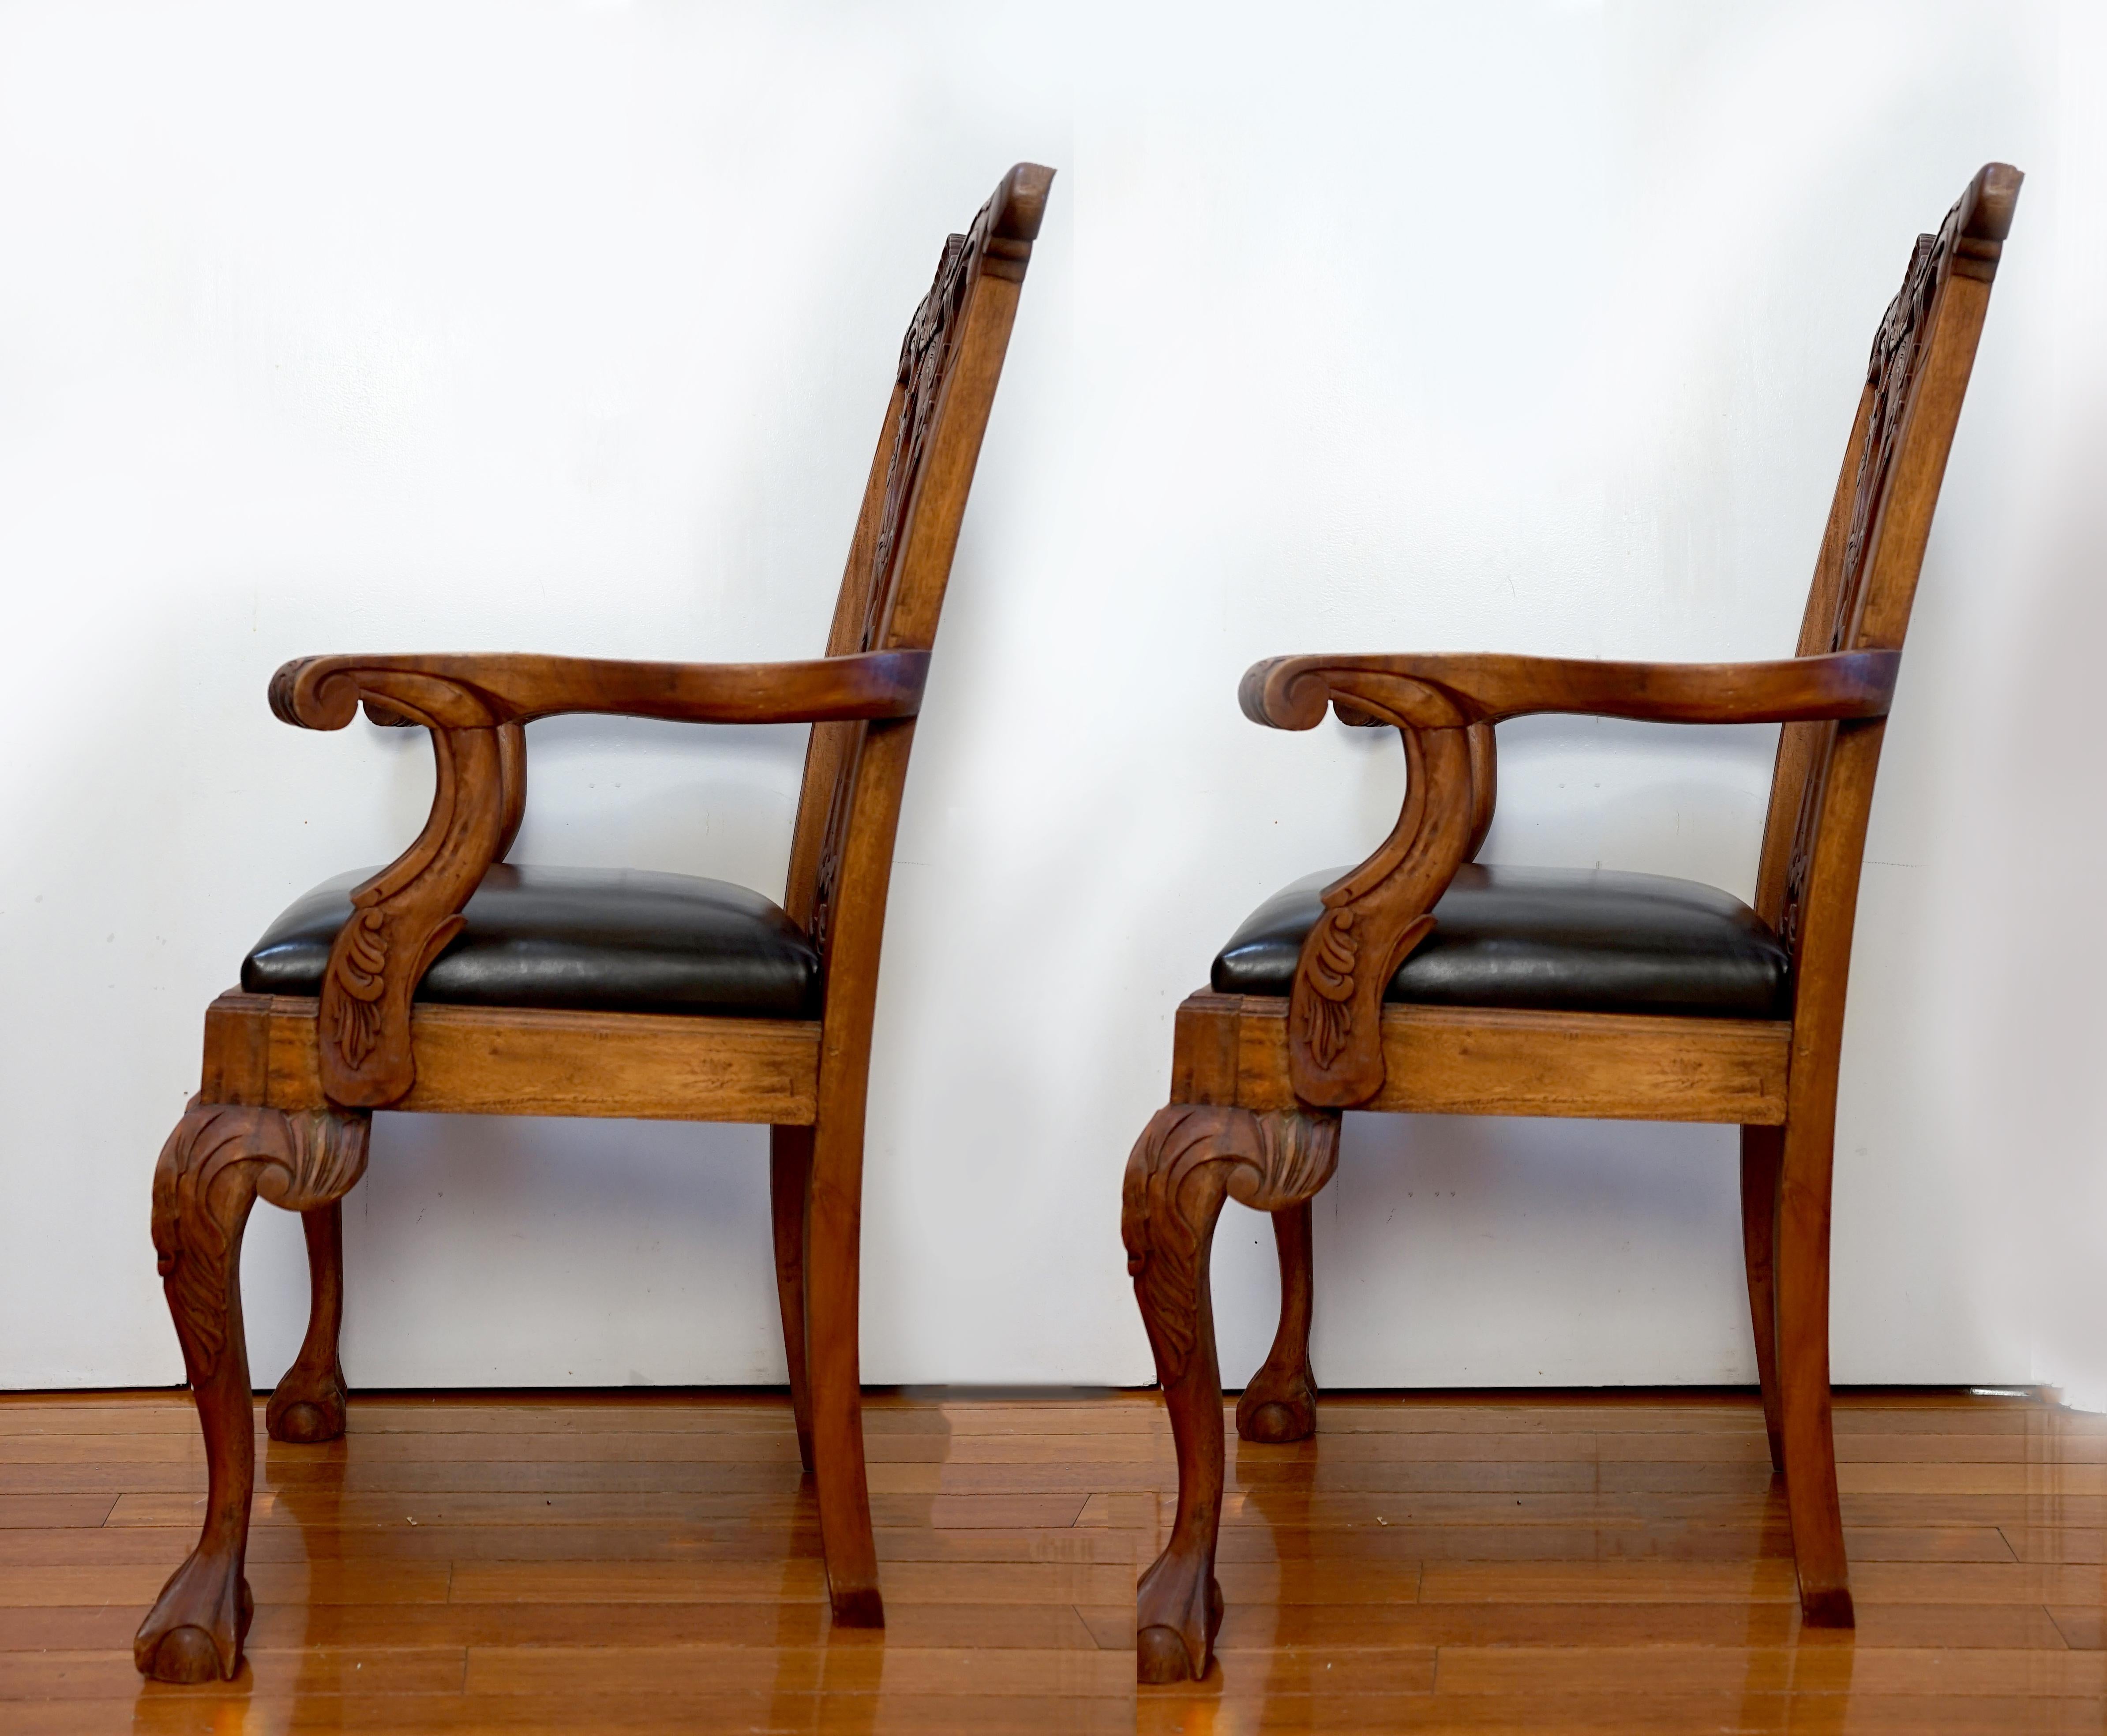 Der Farbton der Beize und die Art und Weise, wie sie das Mahagoni ergänzt, heben dieses Paar Chippendale-Sessel von George III hervor. Die Stühle stammen aus der Zeit um 1920, zwei aus dem ersten Viertel des 20. Jahrhunderts. Die Handschnitzerei